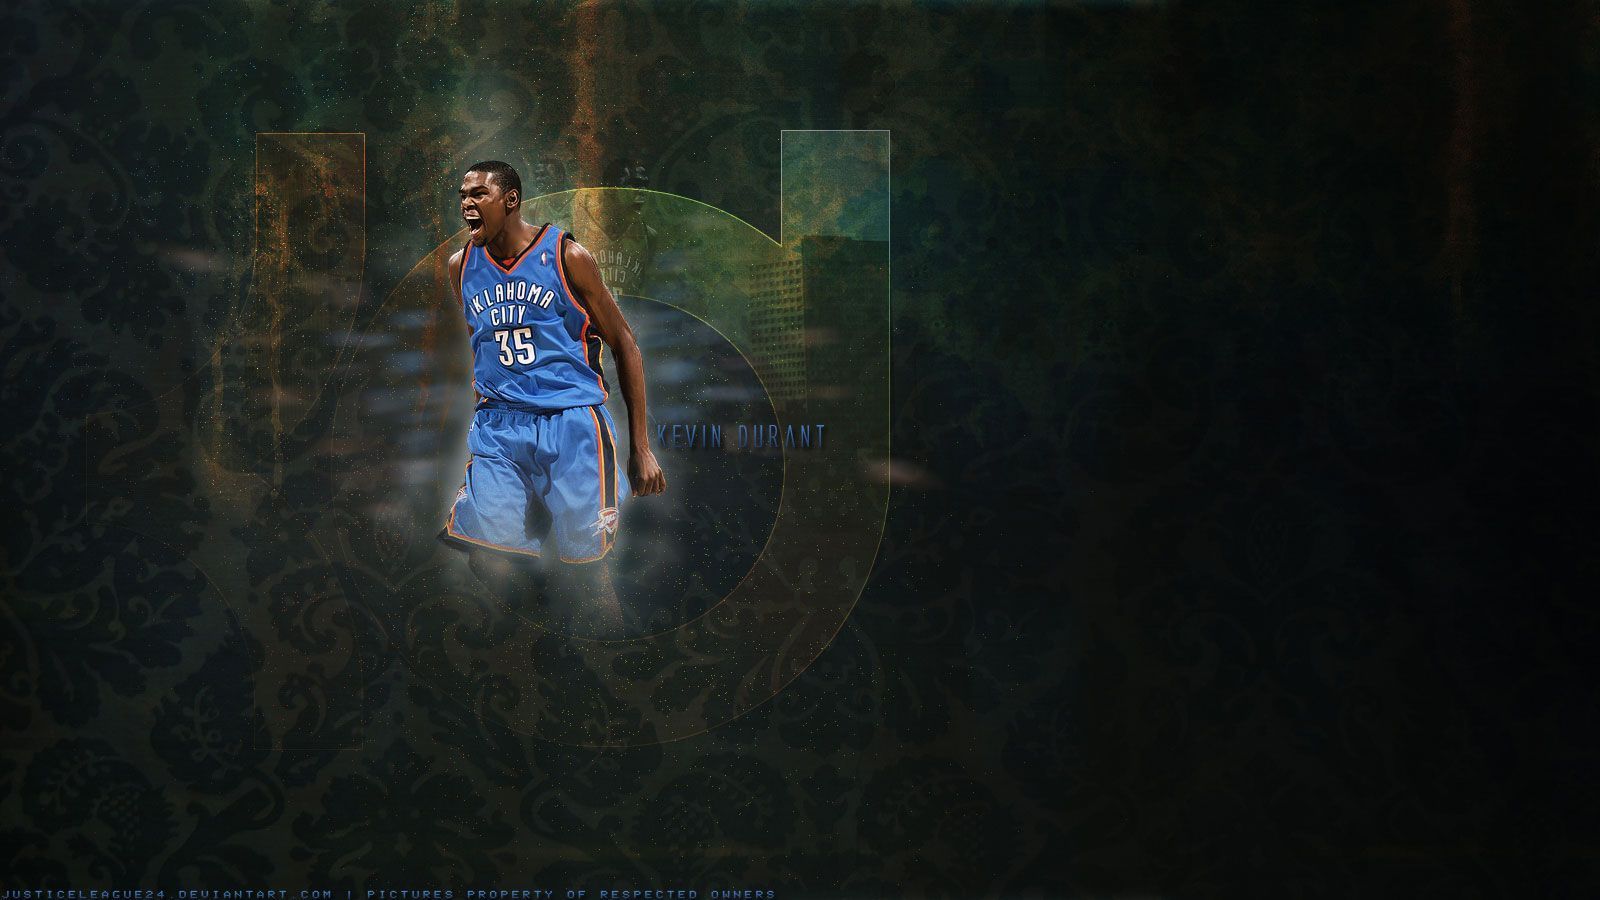 Kevin Durant Thunder 1600×900 Wallpaper | Basketball Wallpapers at ...